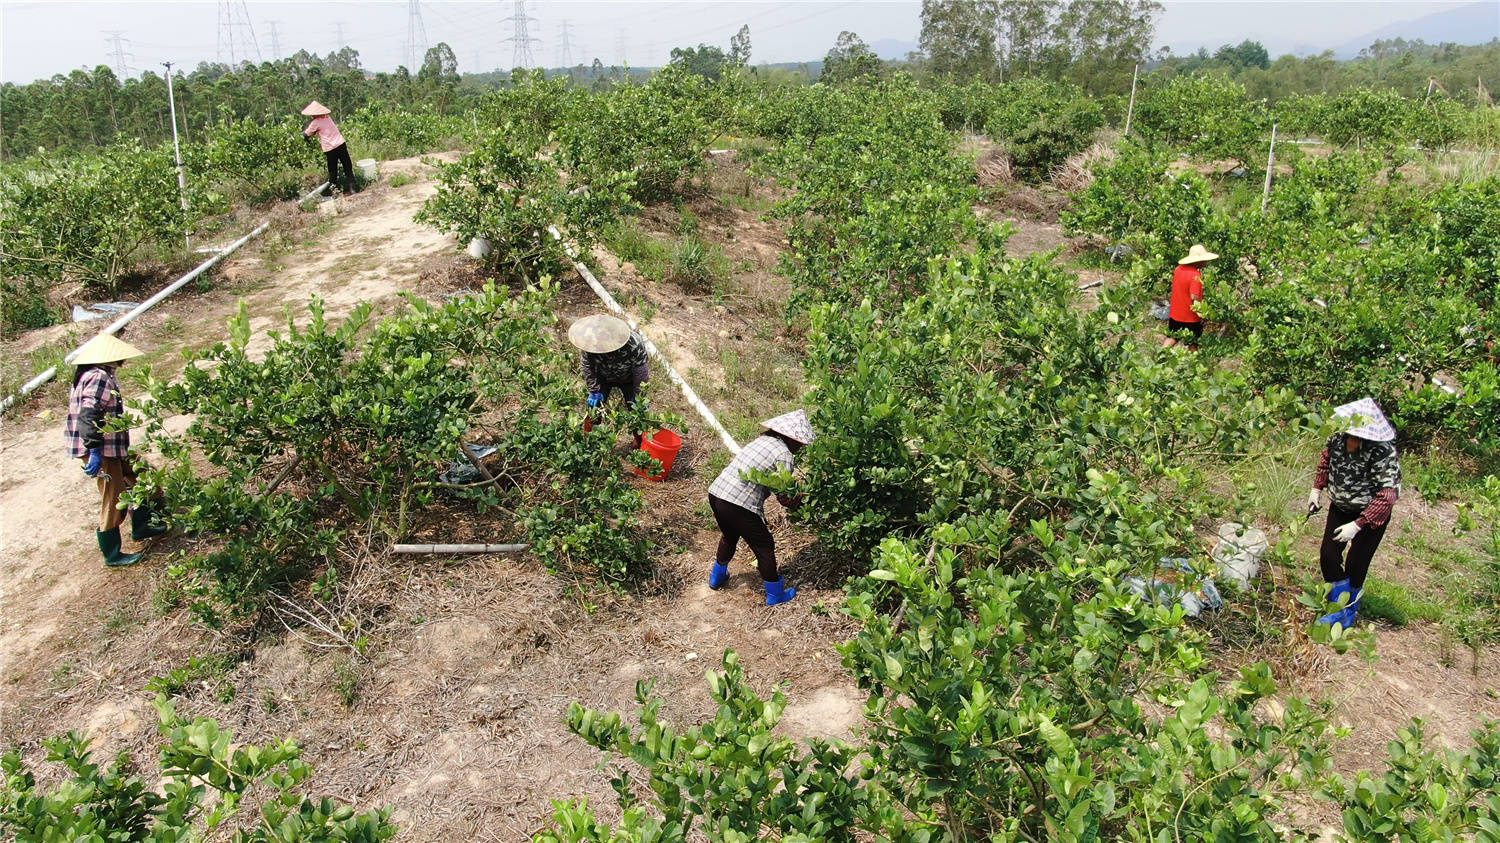 阳西县奥腾香水柠檬种植基地负责人陈德很介绍说,2018年以来,该基地种